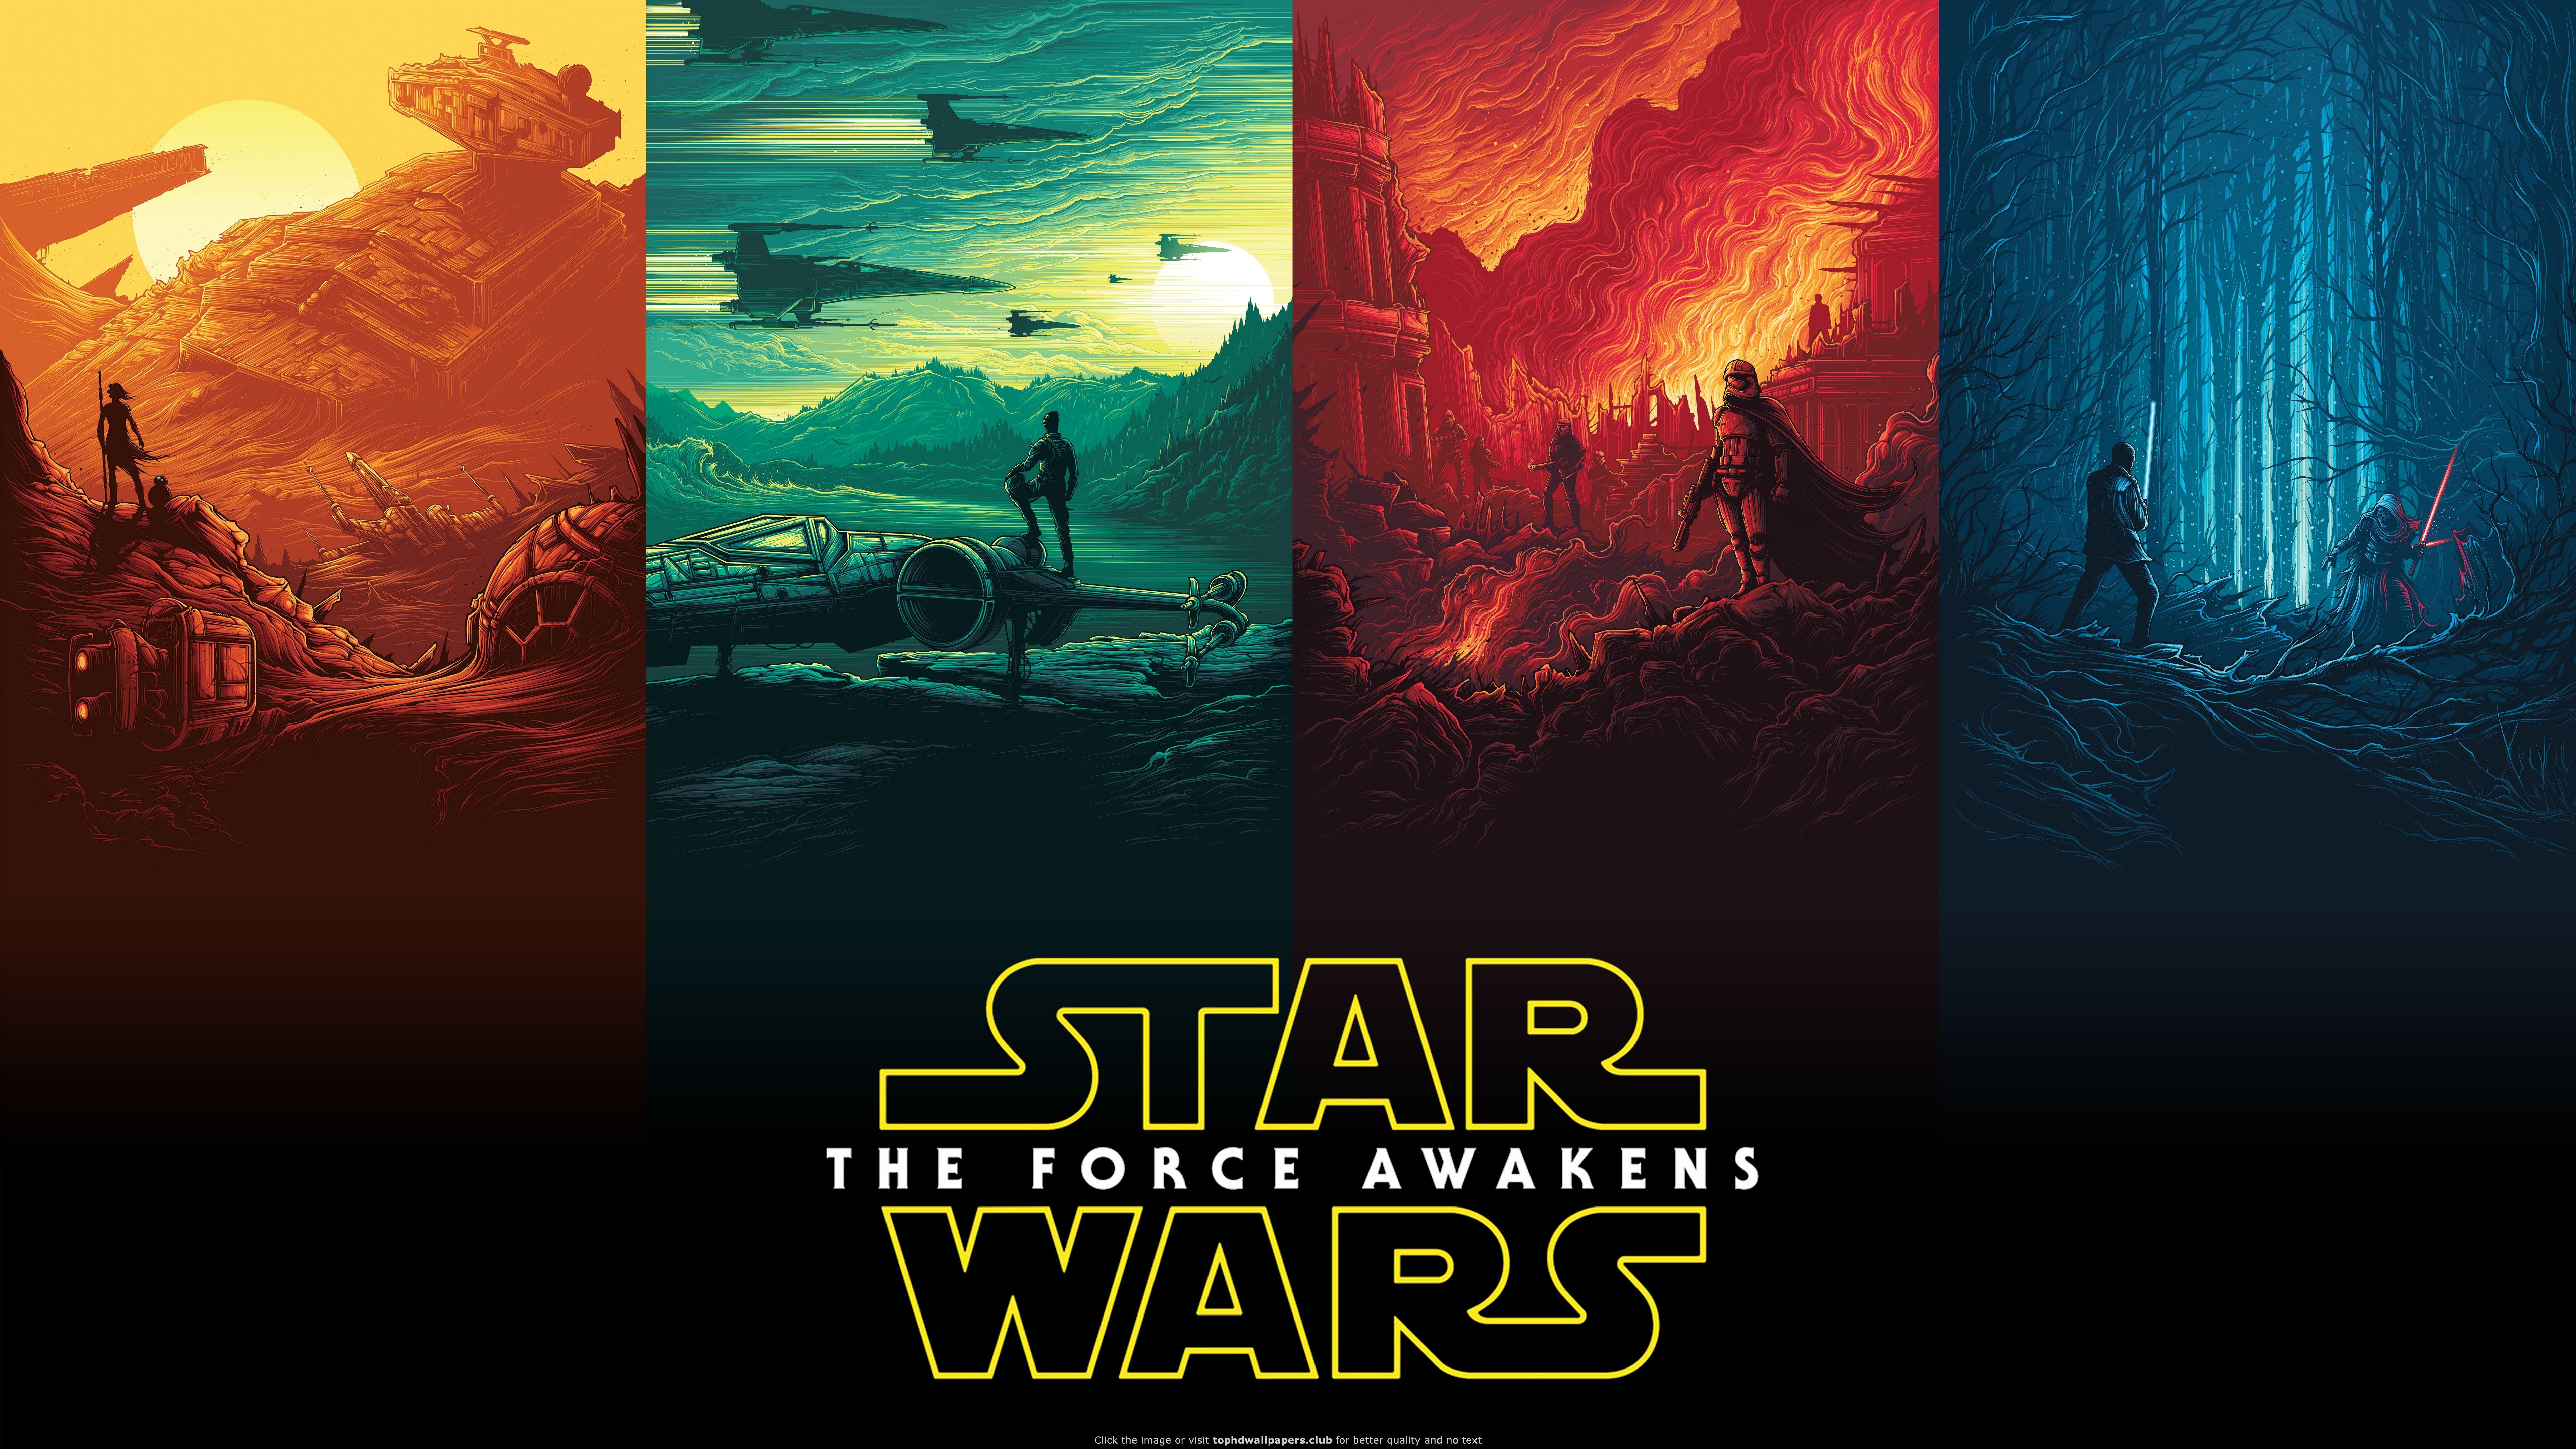 Rey Finn Kylo Ren Han Solo Luke Skywalker Star Wars 4K wallpaper. Star wars wallpaper, Star wars poster, Star wars background